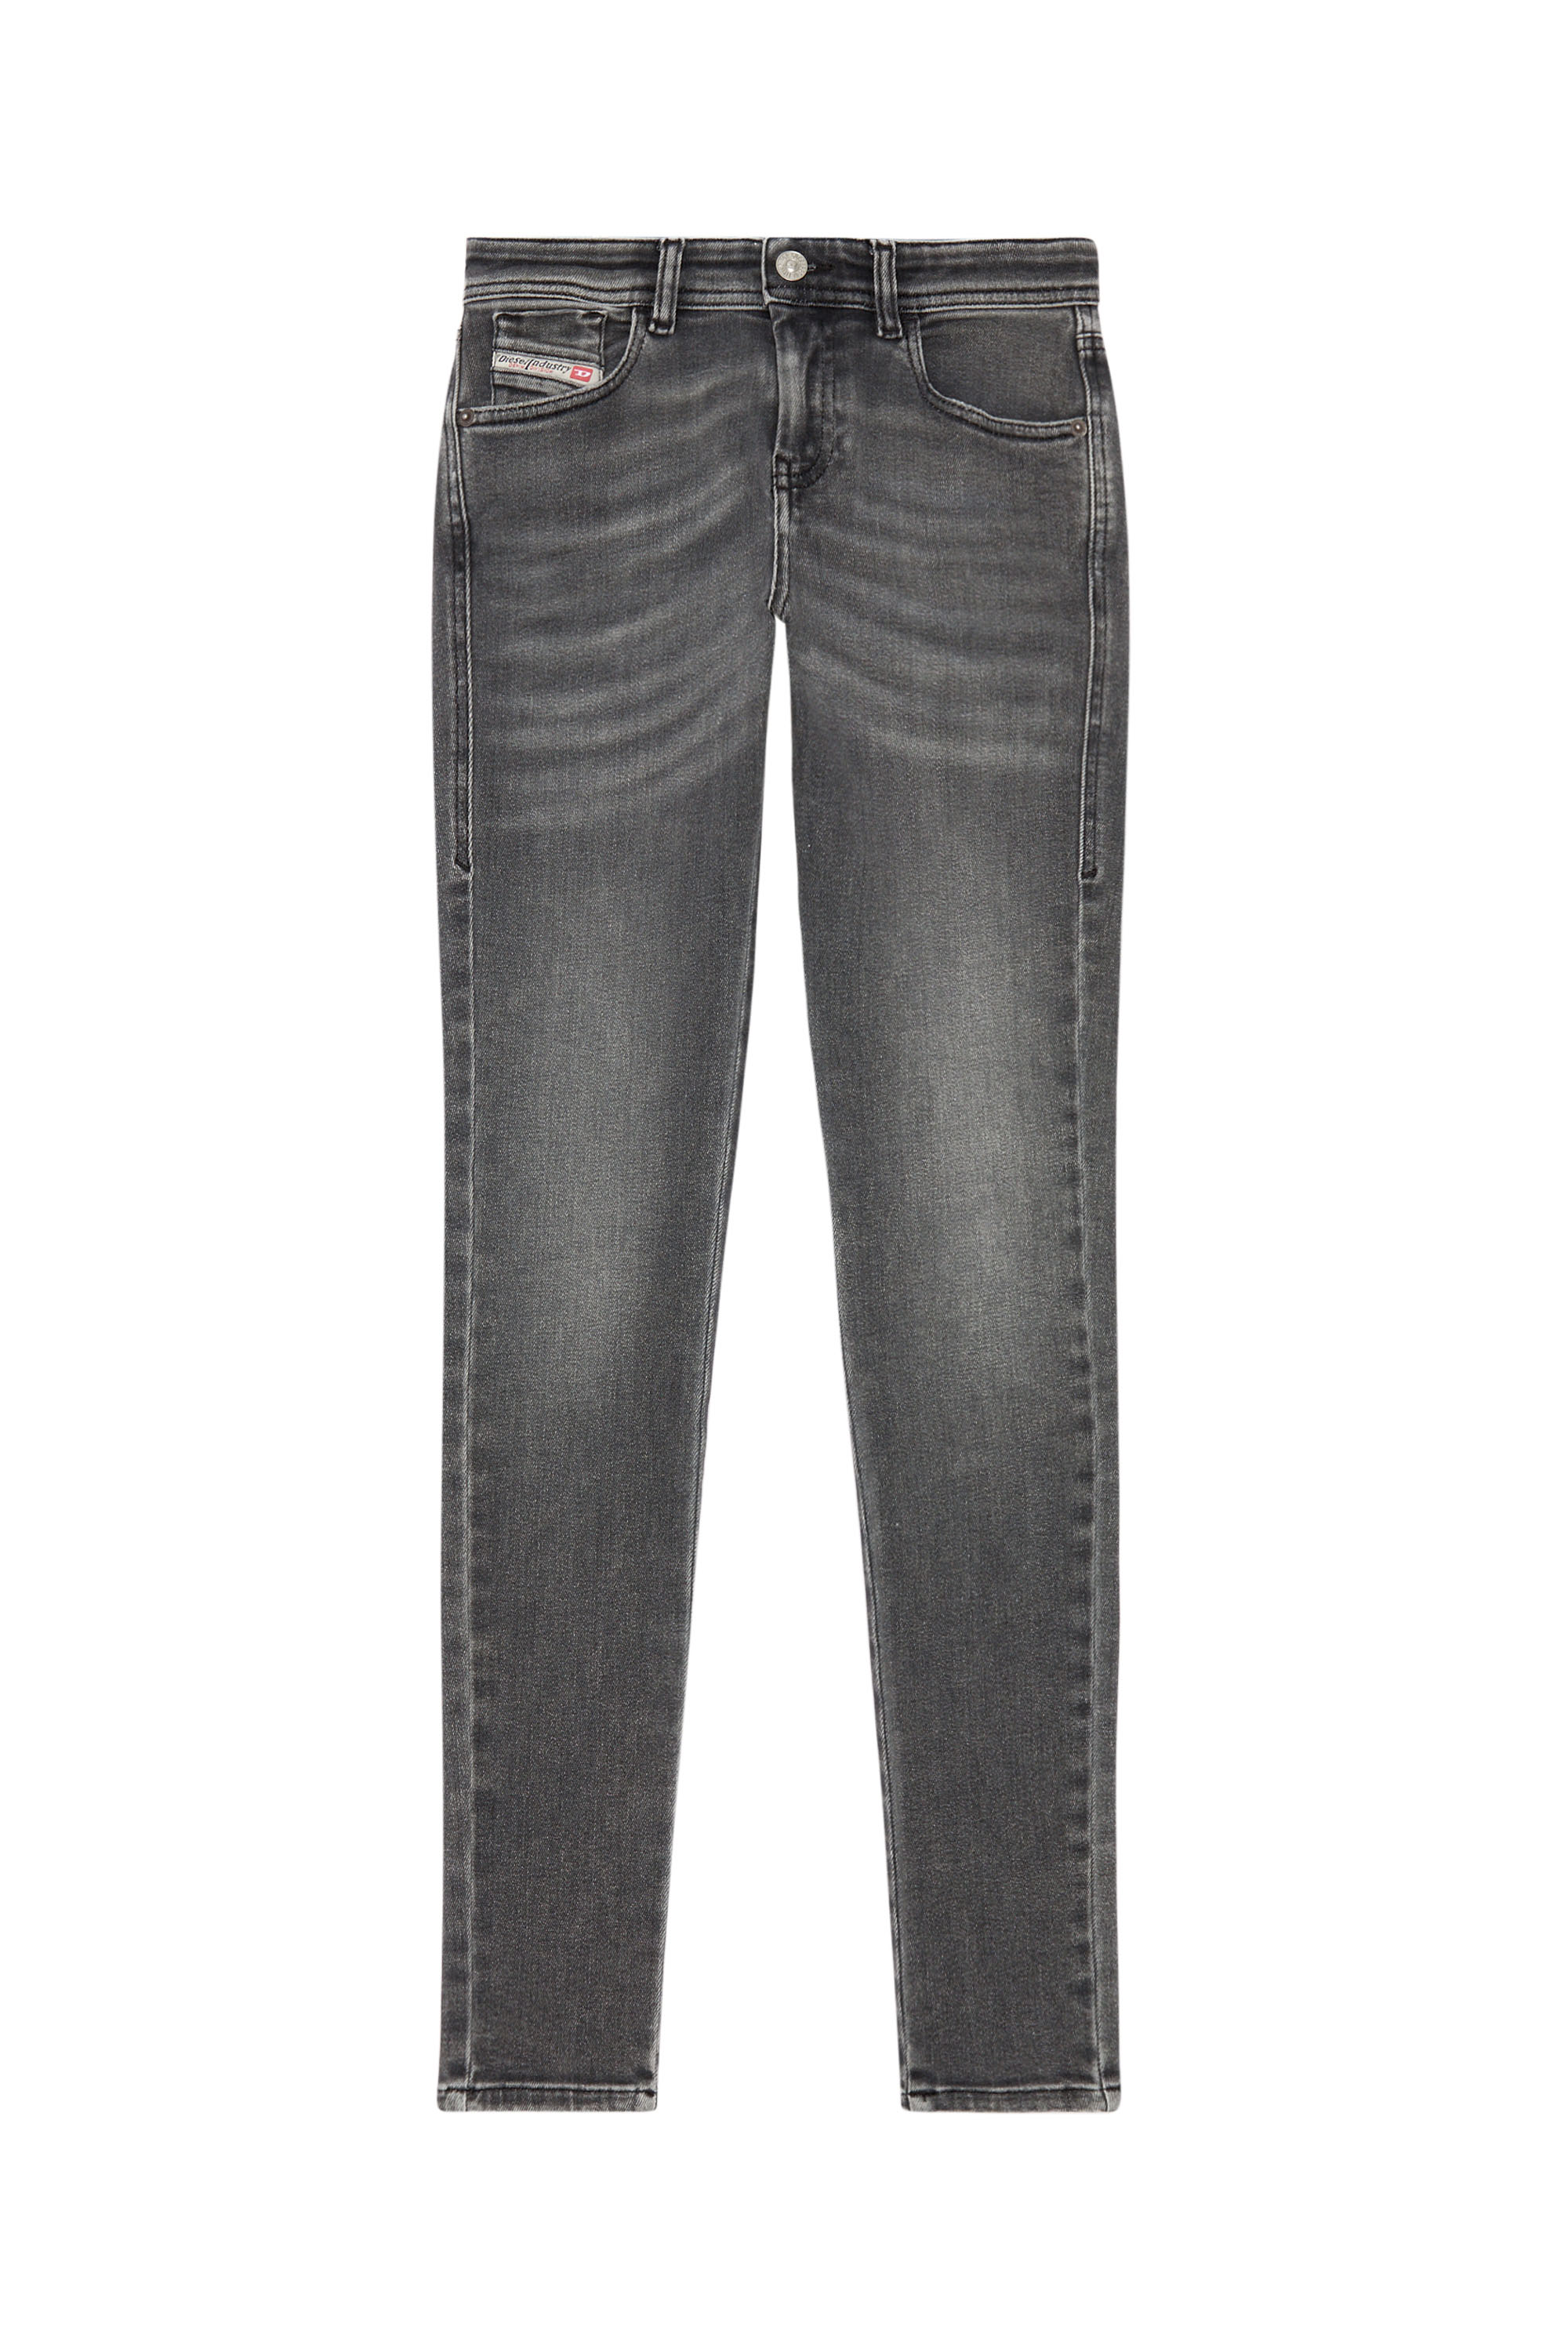 Diesel - Super skinny Jeans 2017 Slandy 09H86, Black/Dark grey - Image 5